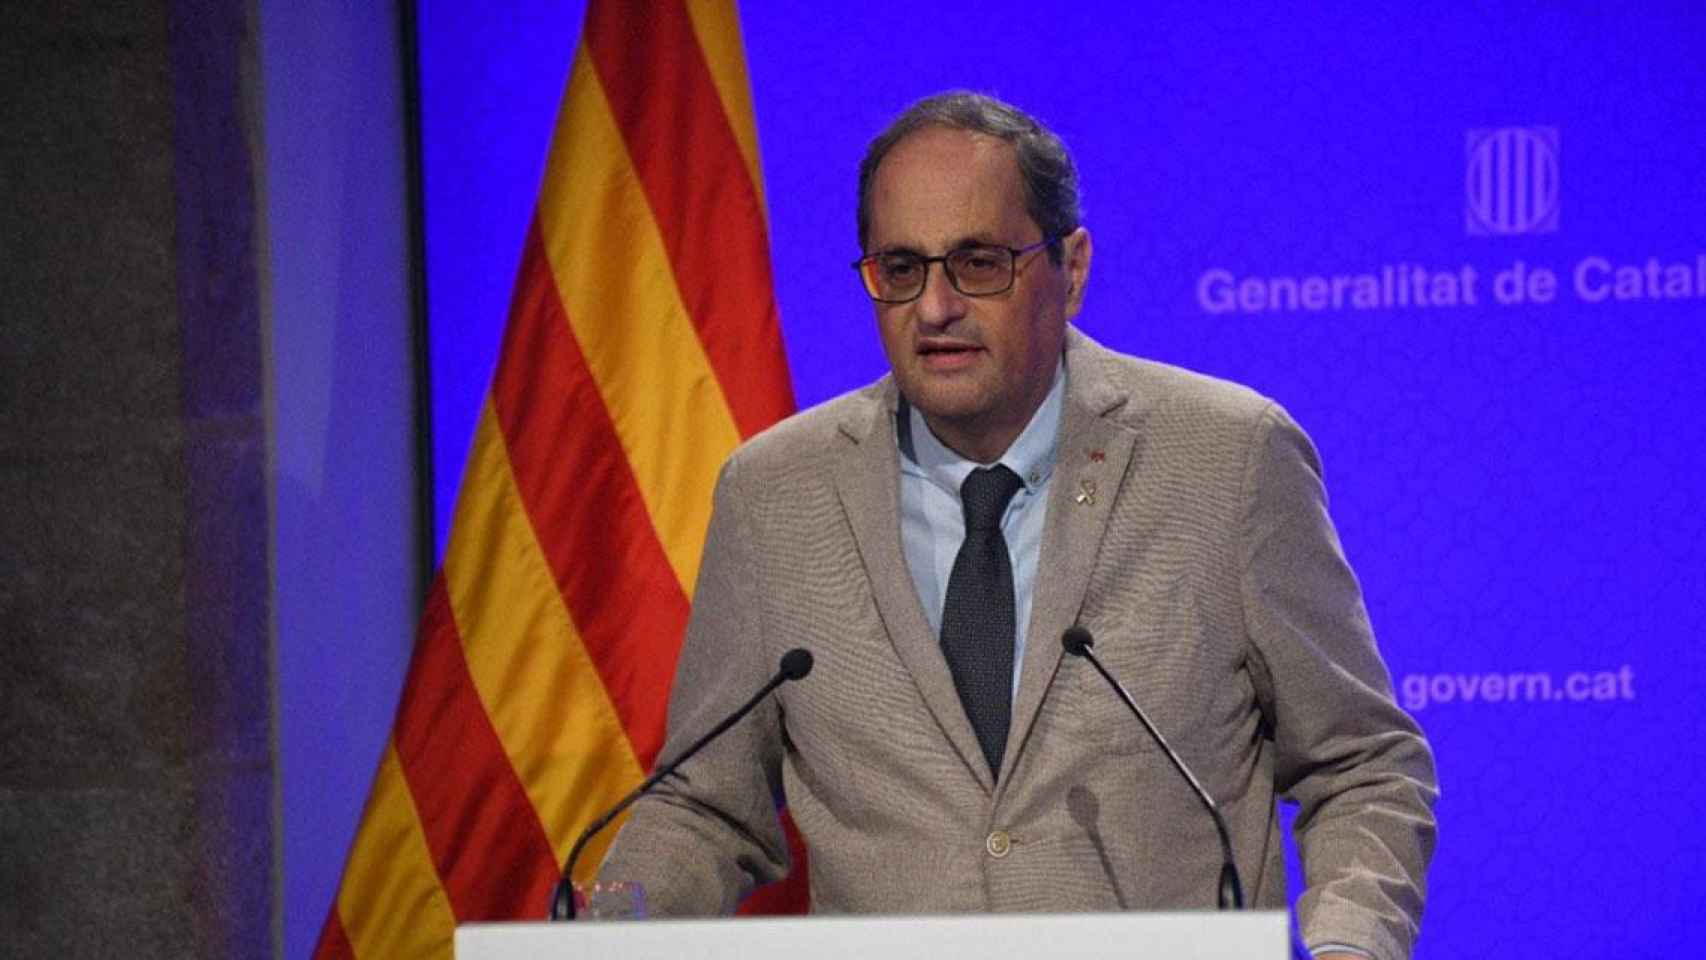 El presidente de la Generalitat, Quim Torra, durante el anuncio de la reclusión del Segrià, Lleida / GOVERN